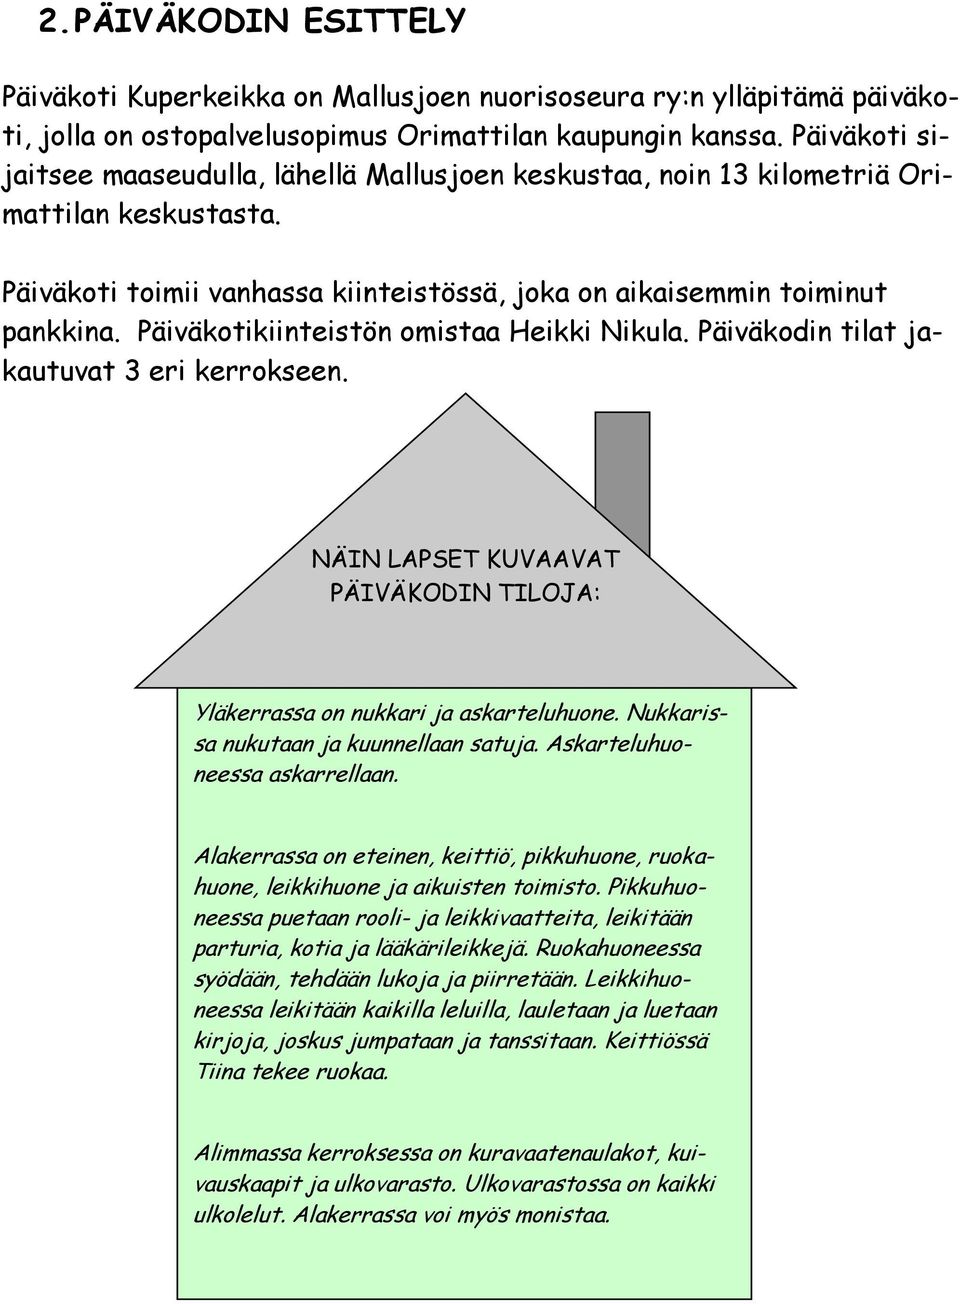 Päiväkotikiinteistön omistaa Heikki Nikula. Päiväkodin tilat jakautuvat 3 eri kerrokseen. NÄIN LAPSET KUVAAVAT PÄIVÄKODIN TILOJA: Yläkerrassa on nukkari ja askarteluhuone.